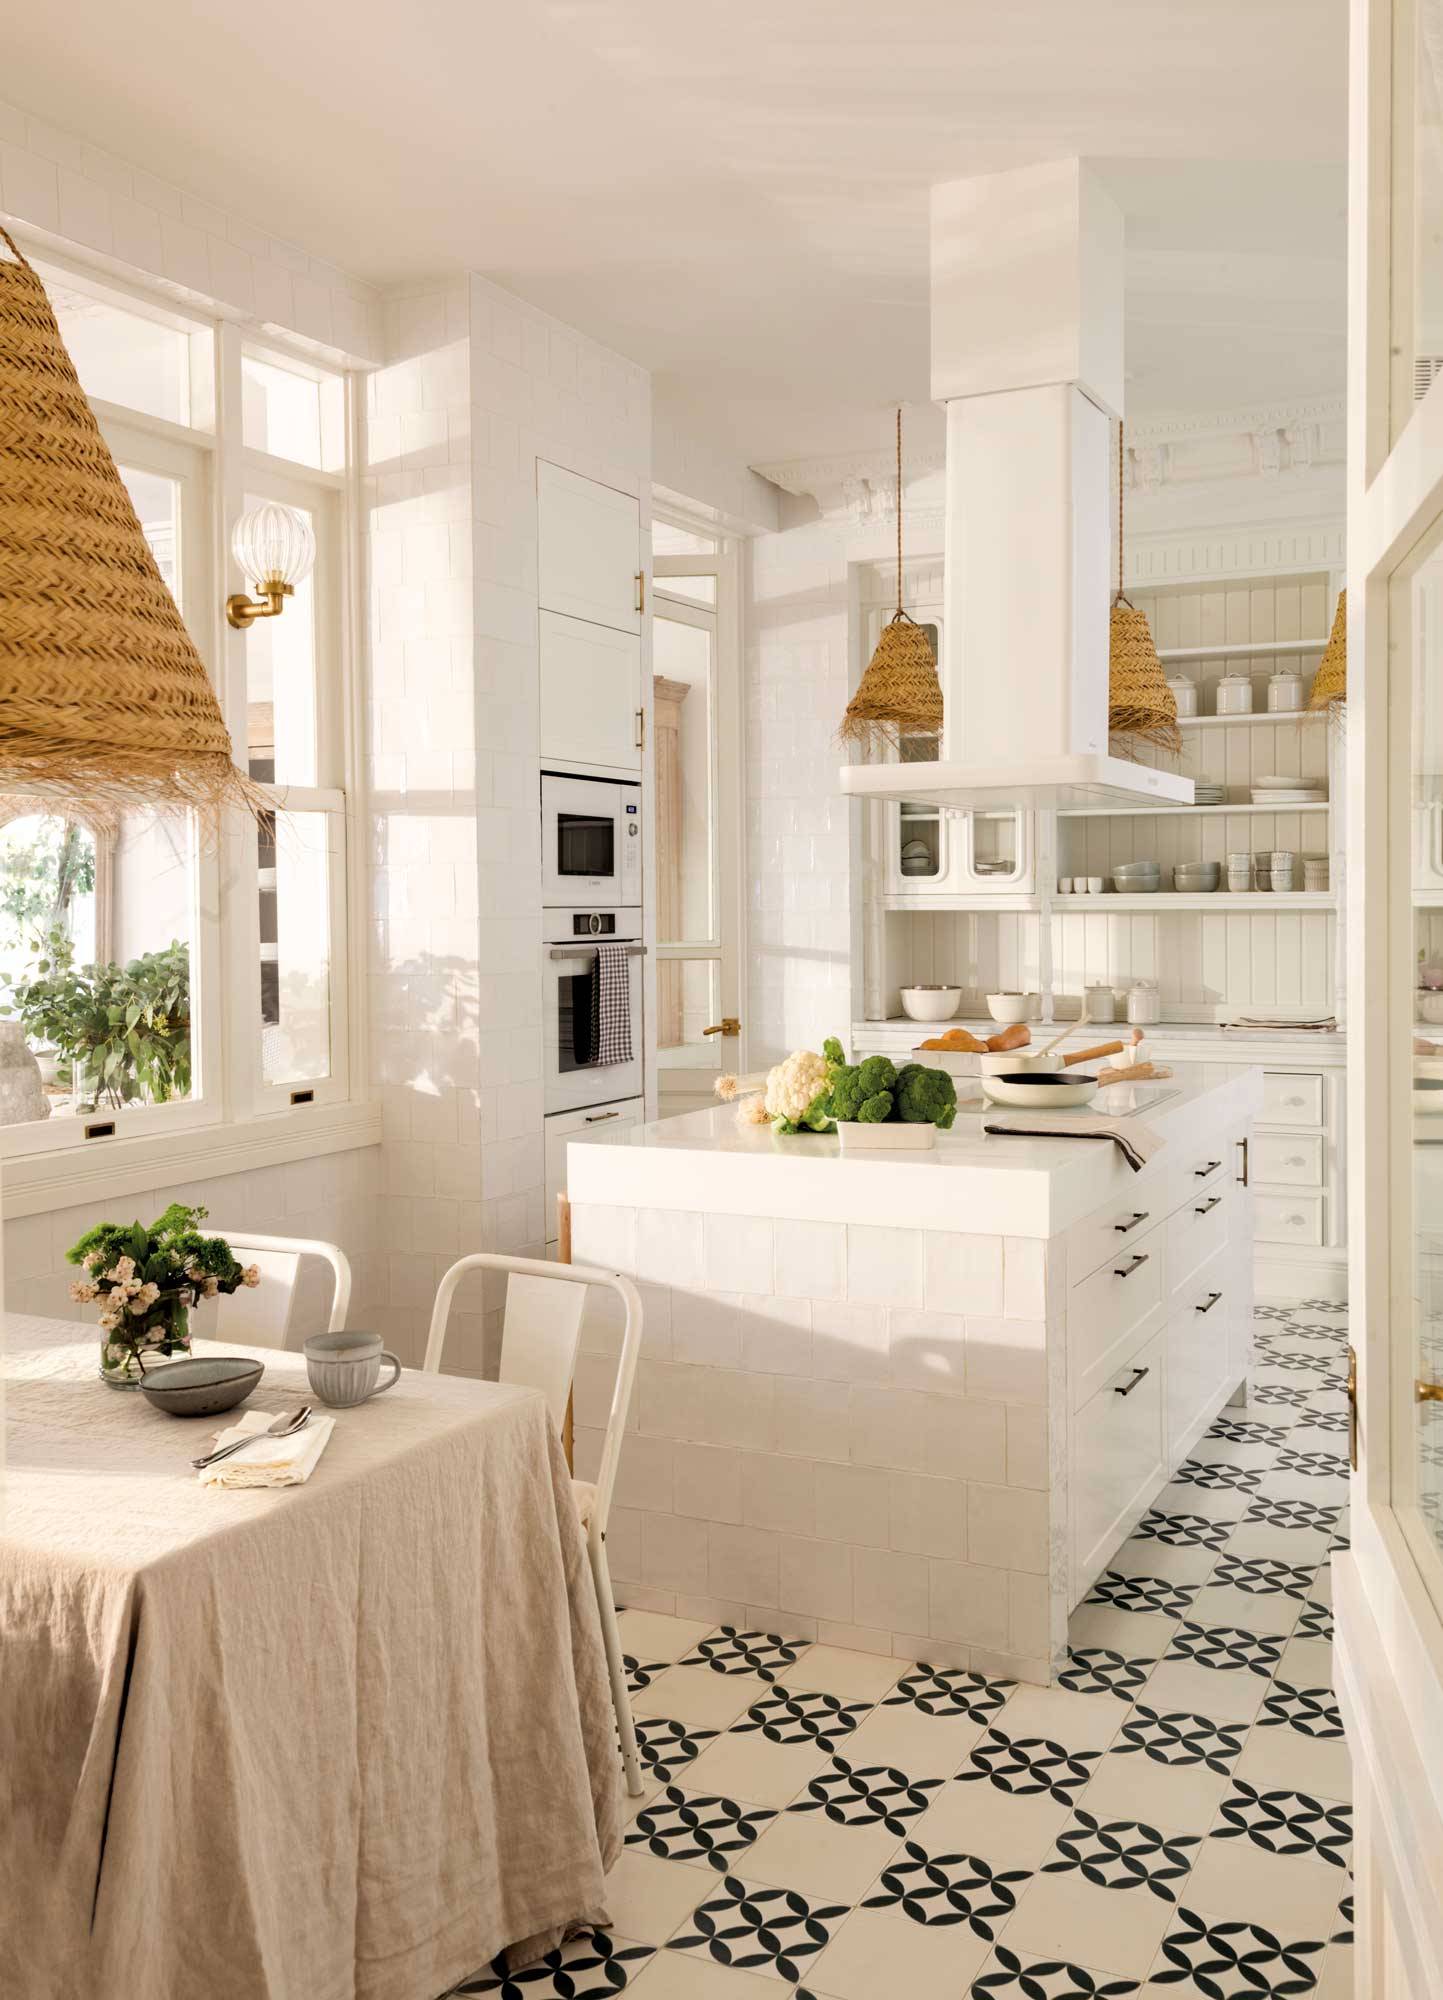 Cocina de estilo clásico con muebles blancos y baldosas hidráulicas. 